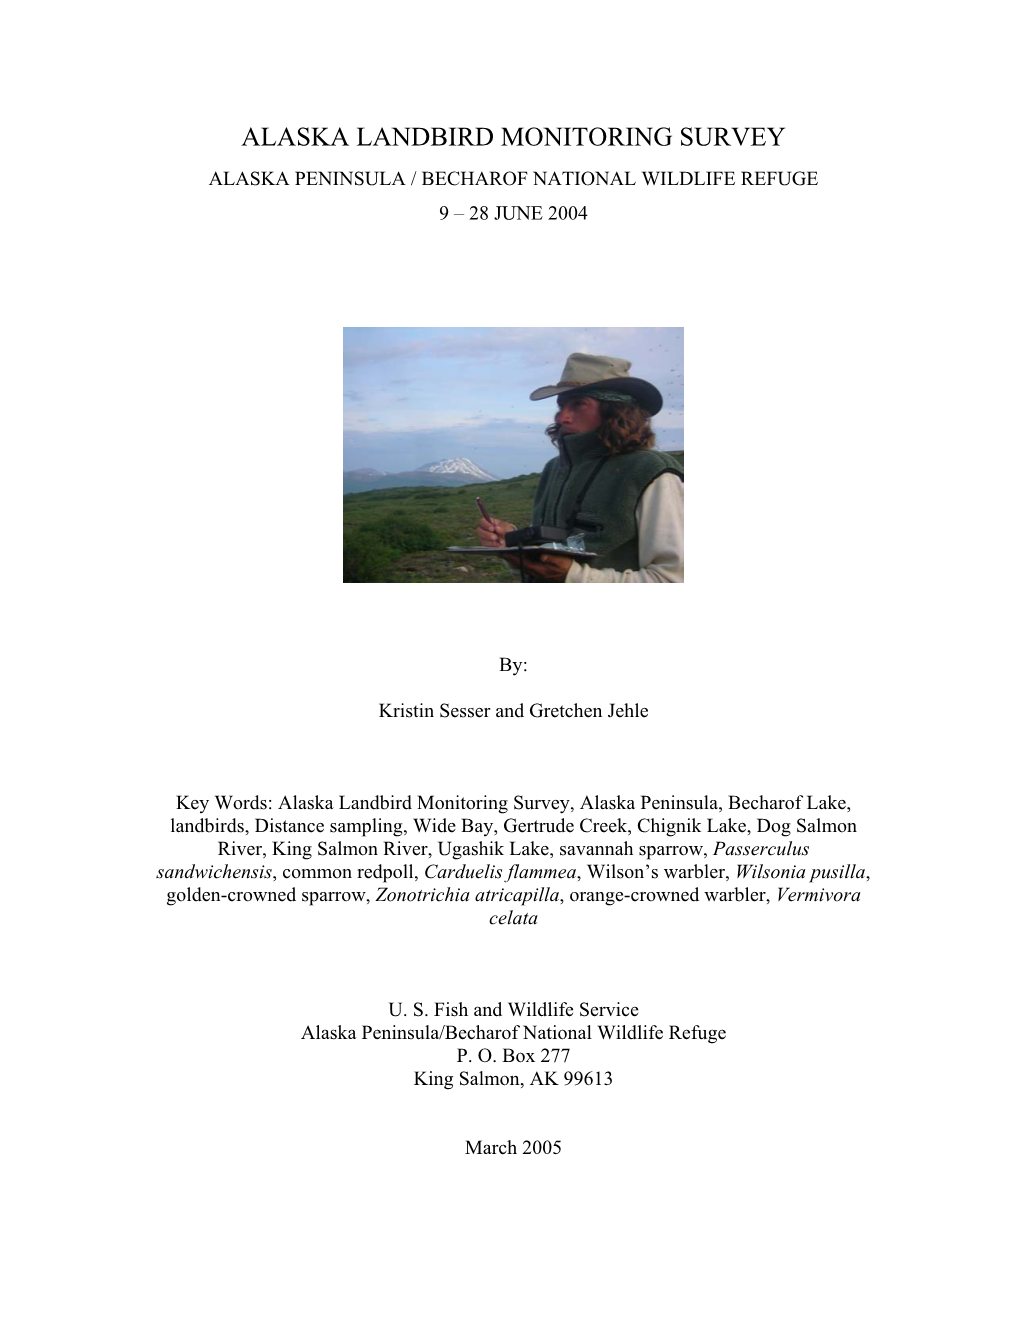 Alaska Landbird Monitoring Survey Alaska Peninsula / Becharof National Wildlife Refuge 9 – 28 June 2004